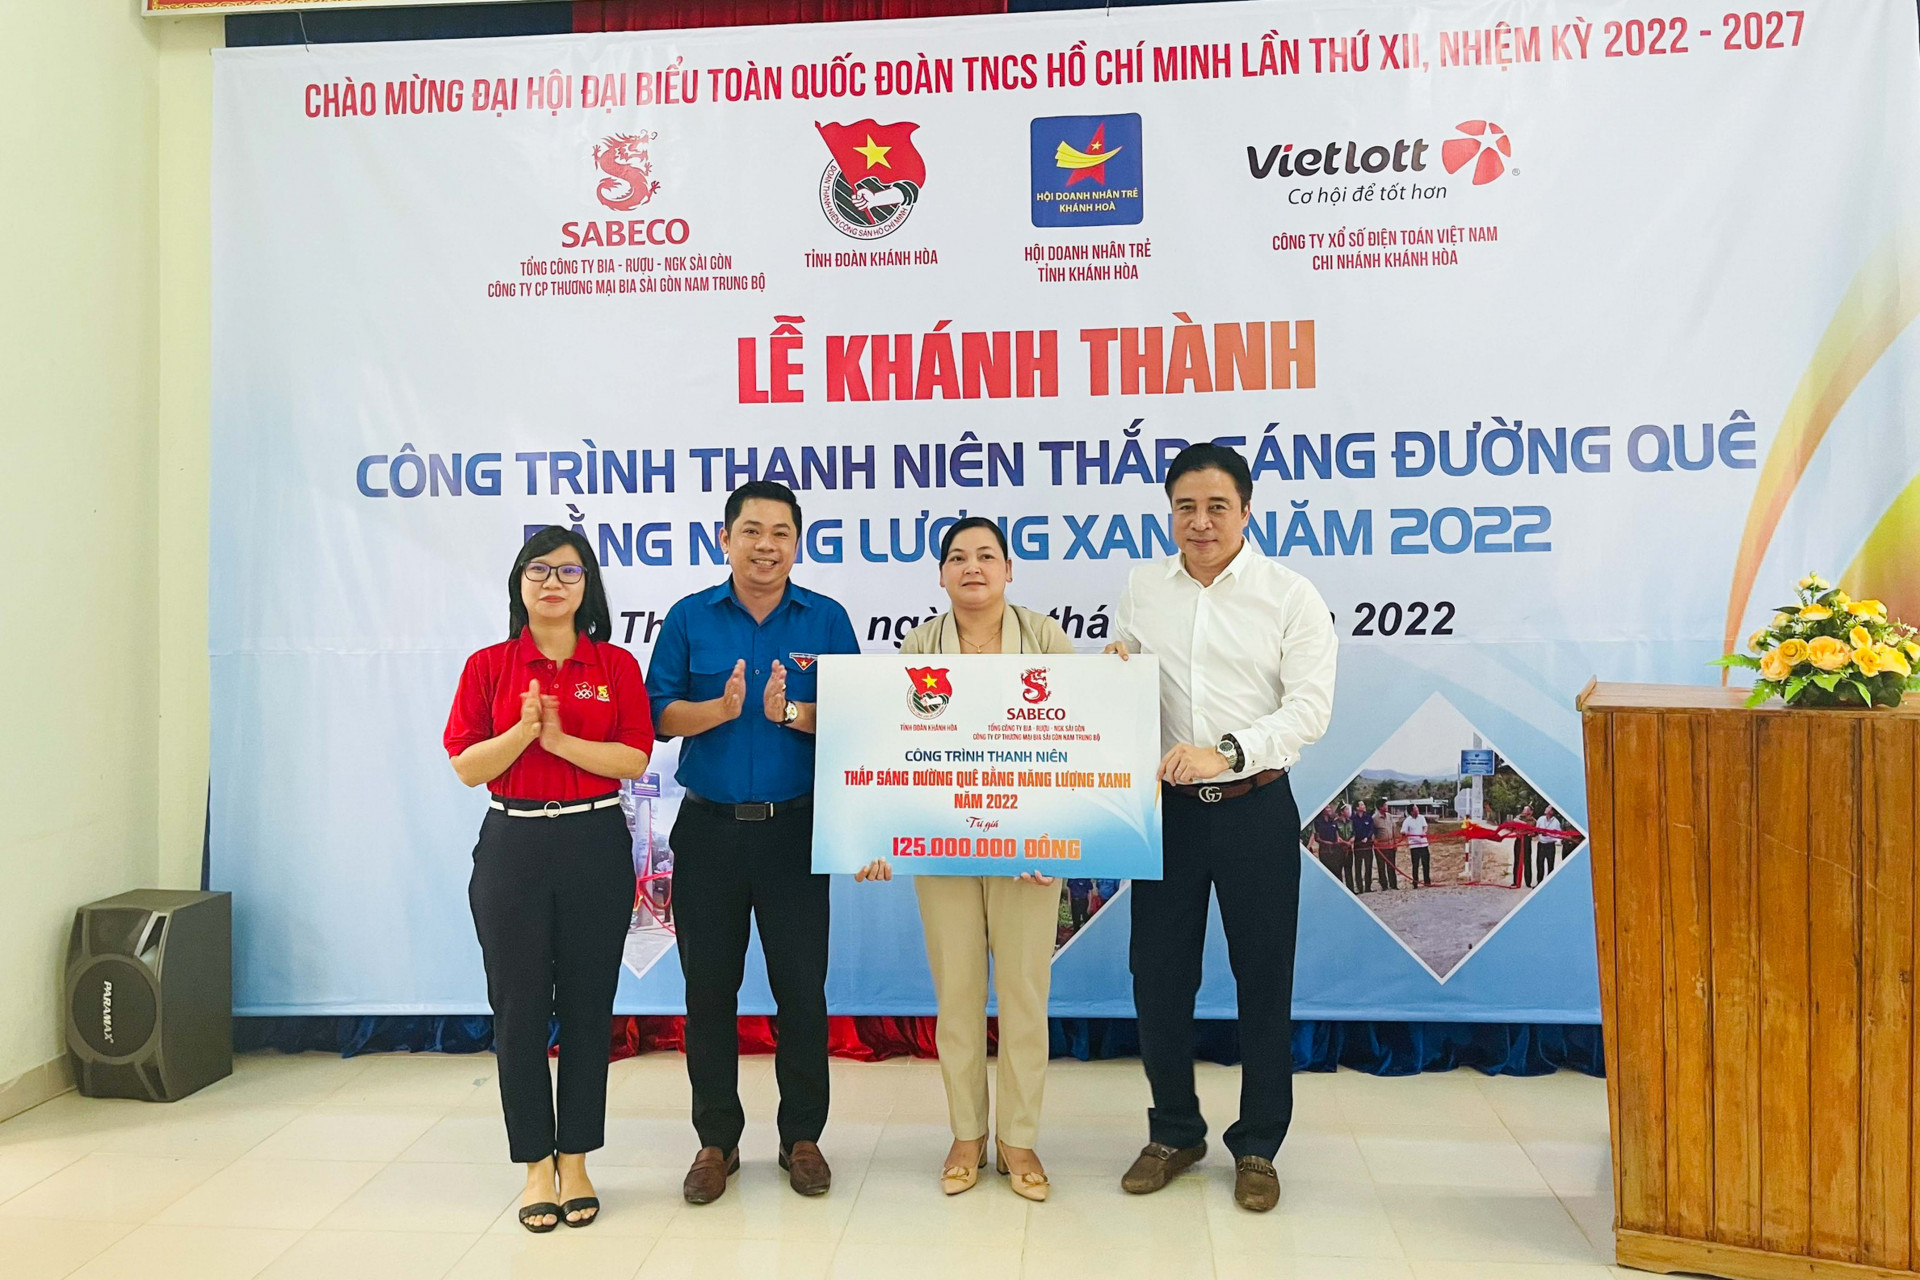 Đồng chí Nguyễn Khắc Toàn cùng các đơn vị trao biểu trưng công trình thanh niên Thắp sáng đường quê bằng năng lượng xanh cho địa phương